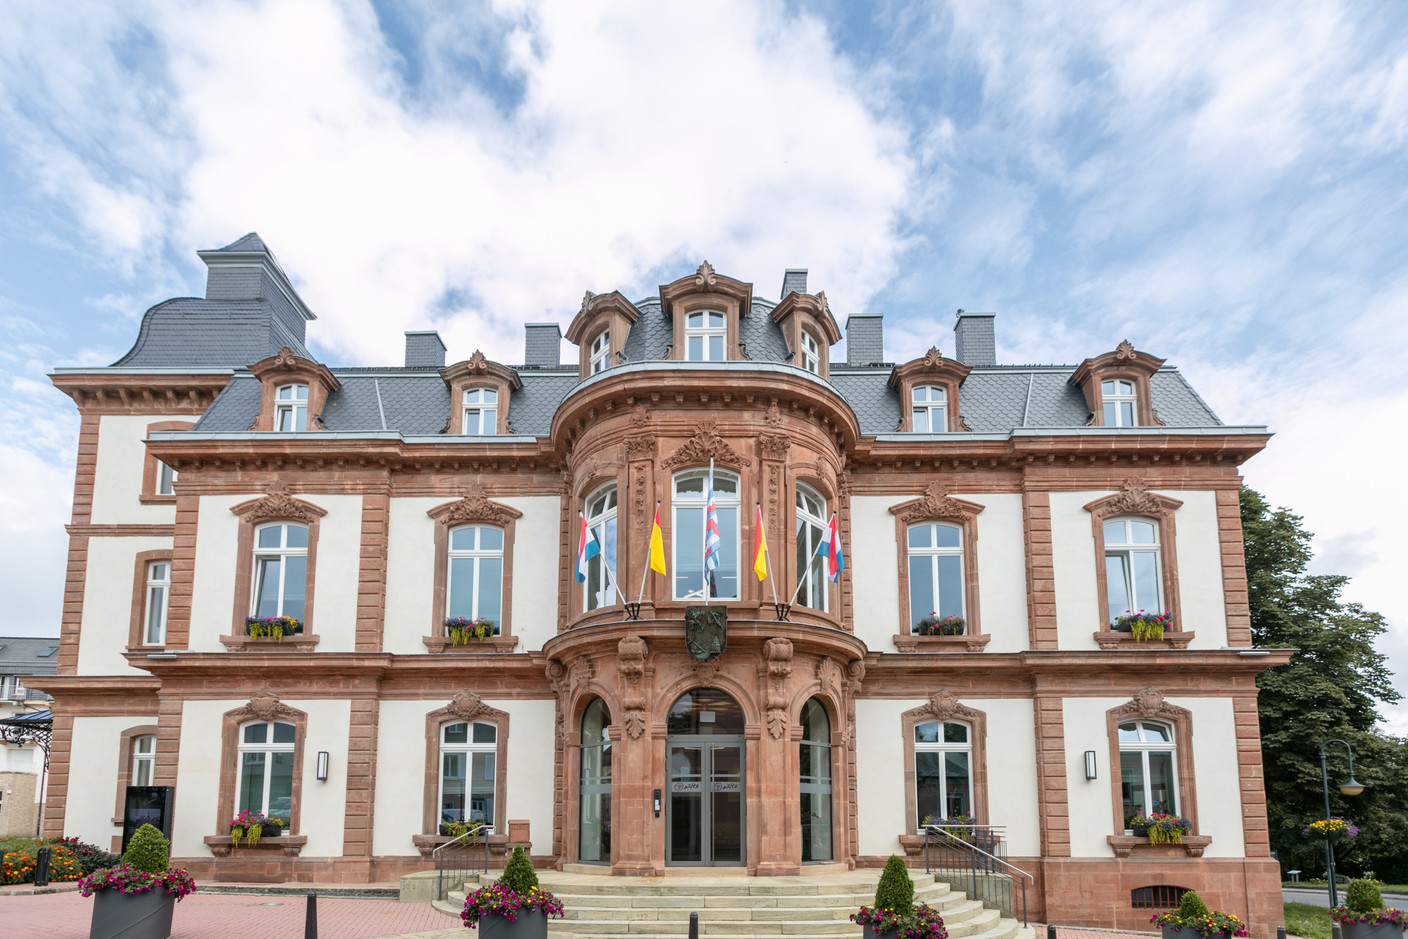 Situé sur la Grand-Rue, le bâtiment fait office de mairie de Wiltz. (Photo: Romain Gamba/Maison Moderne)